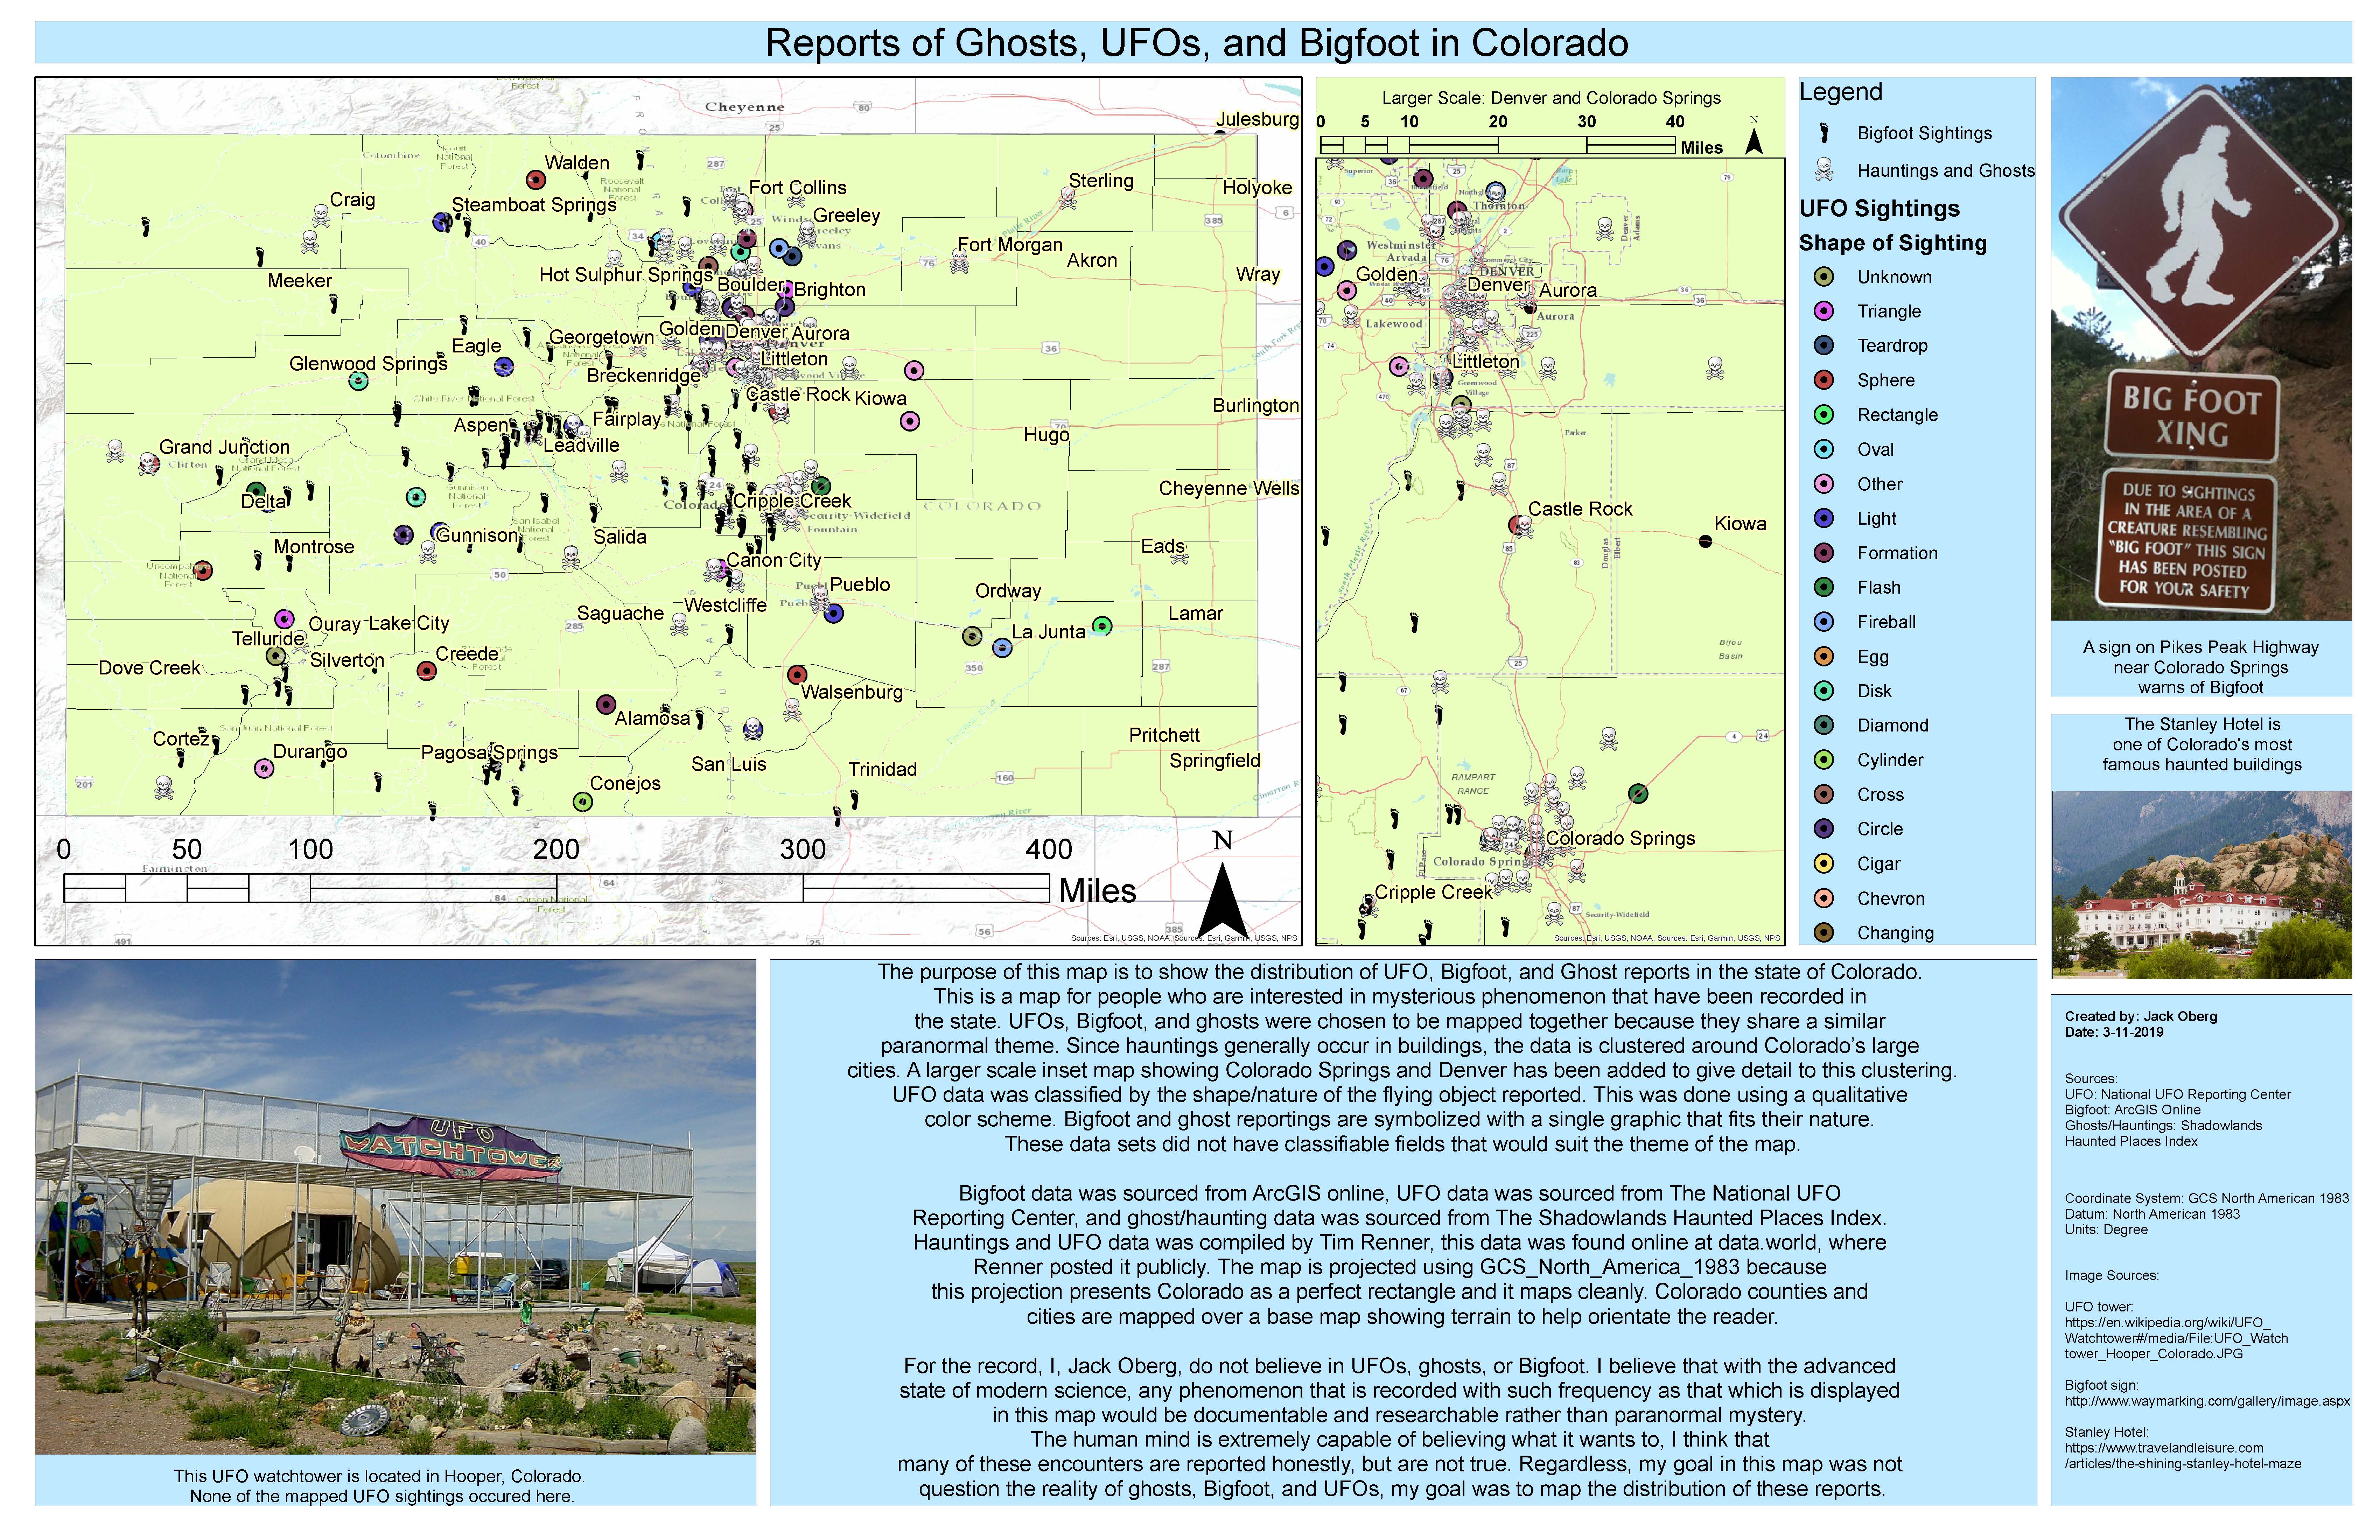 map of paranormal activity in Colorado